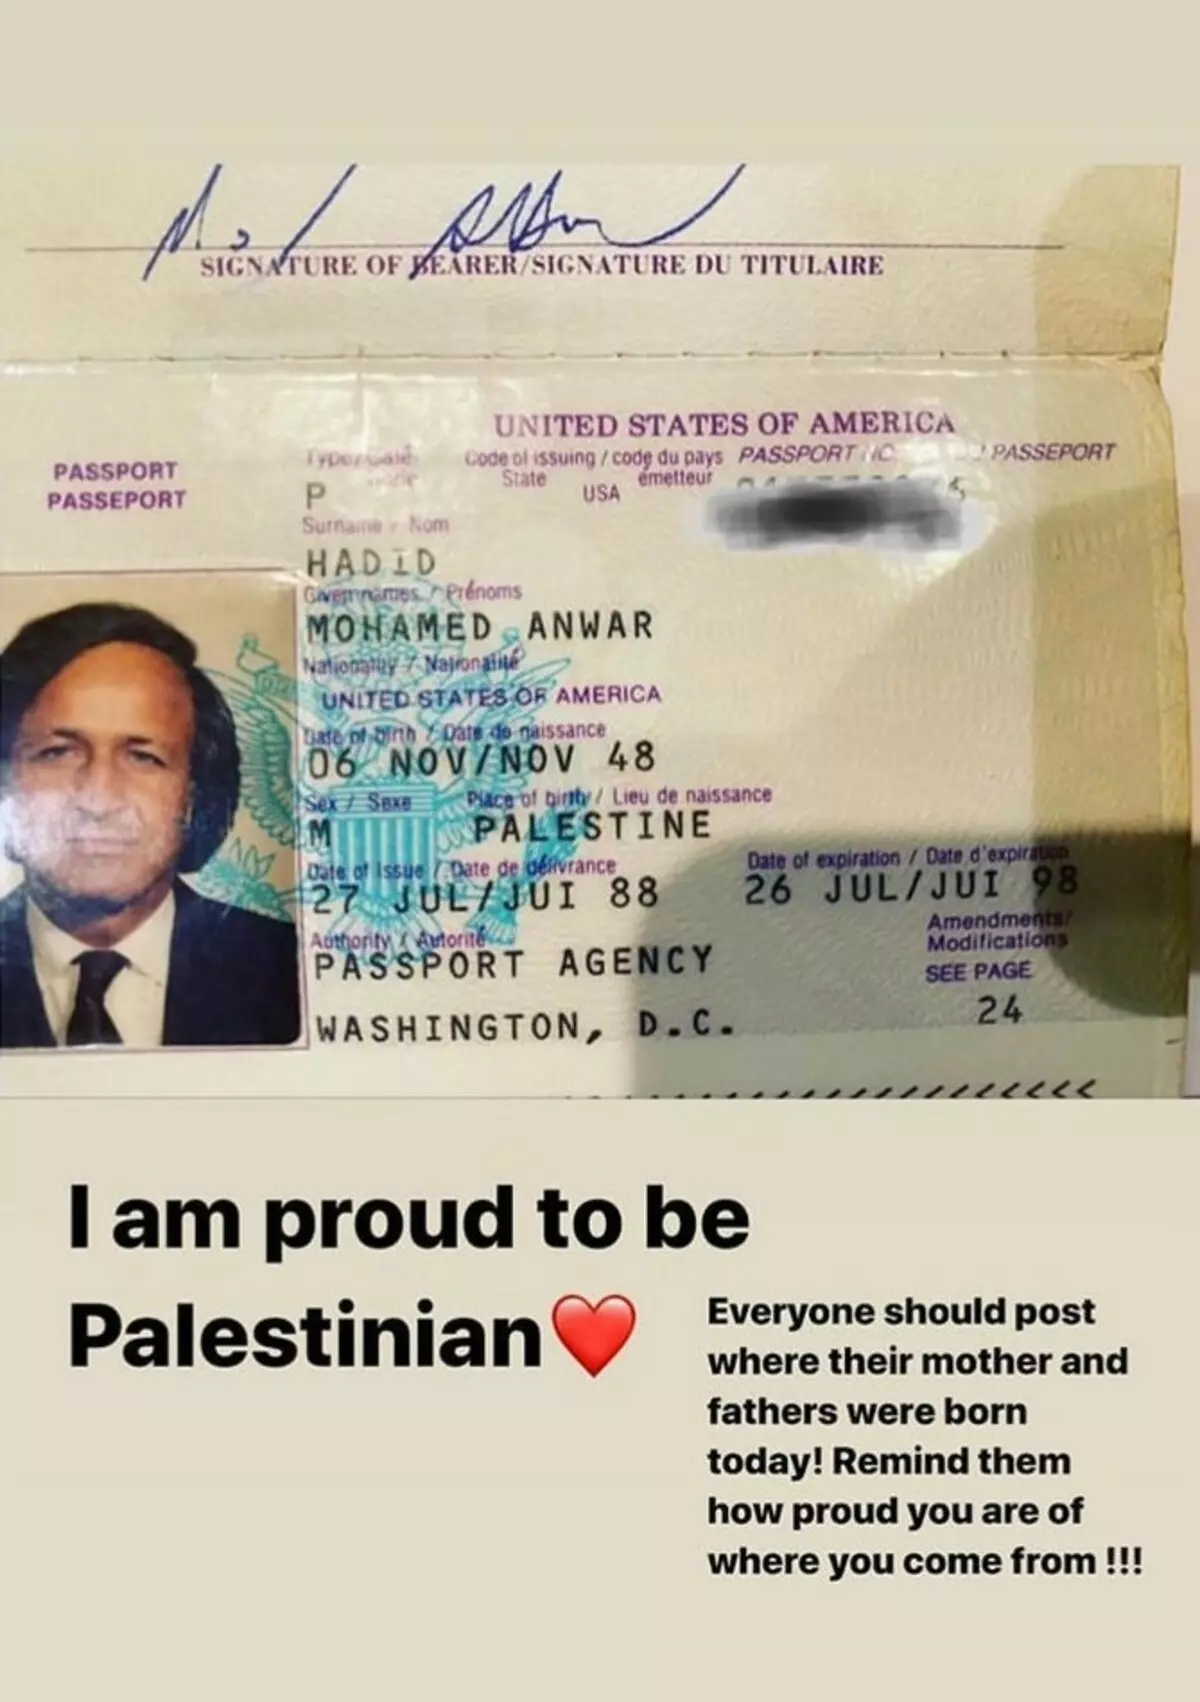 بیلا حدیث ناراض ہو گیا ہے کہ انسٹاگرام نے اپنے والد کے پاسپورٹ کی تصویر کو ہٹا دیا: 